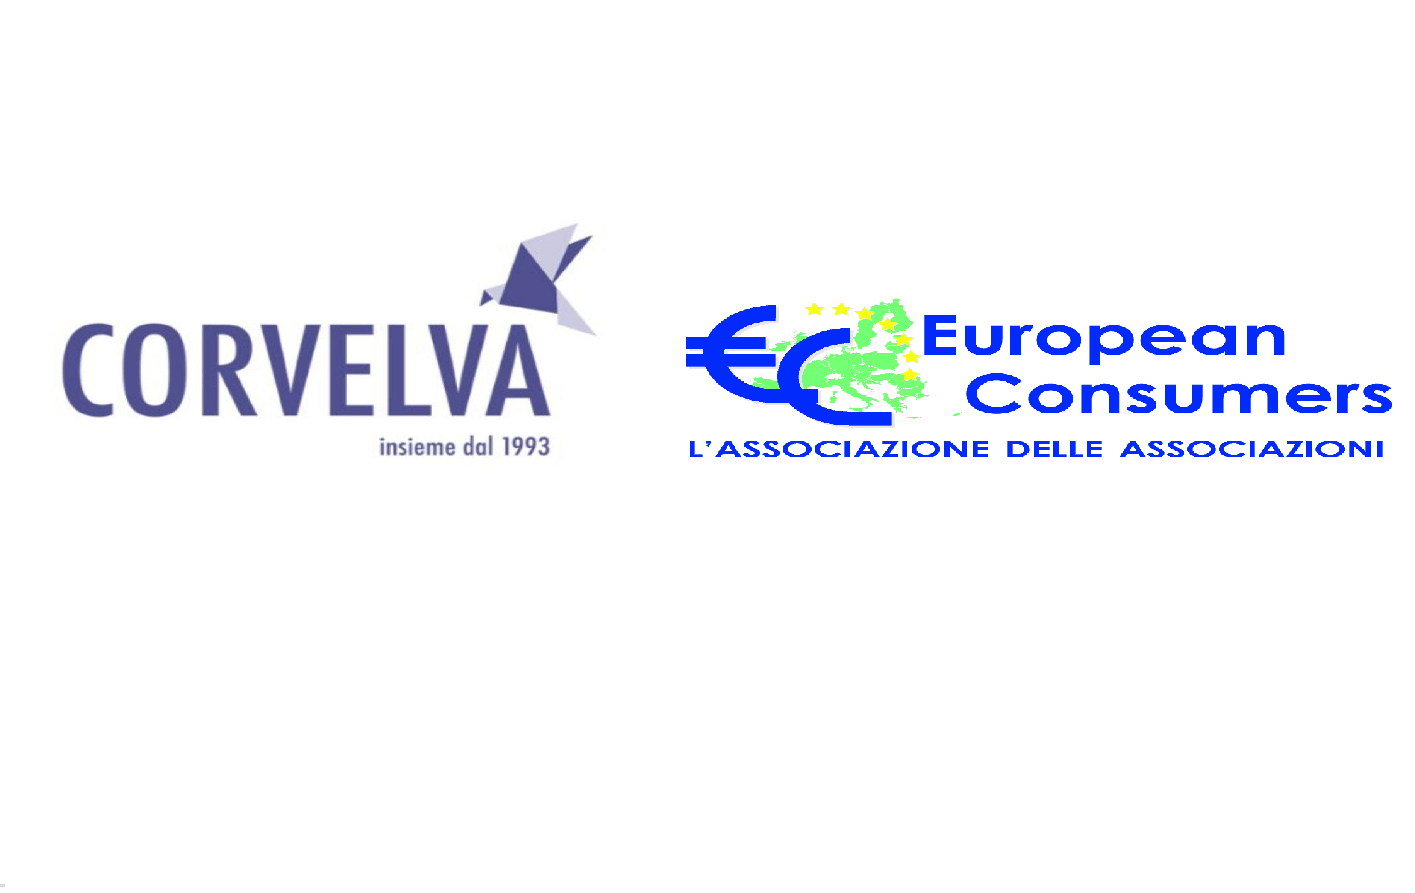 Collaborazione tra European Consumers e Corvelva a tutela della salute umana e ambientale